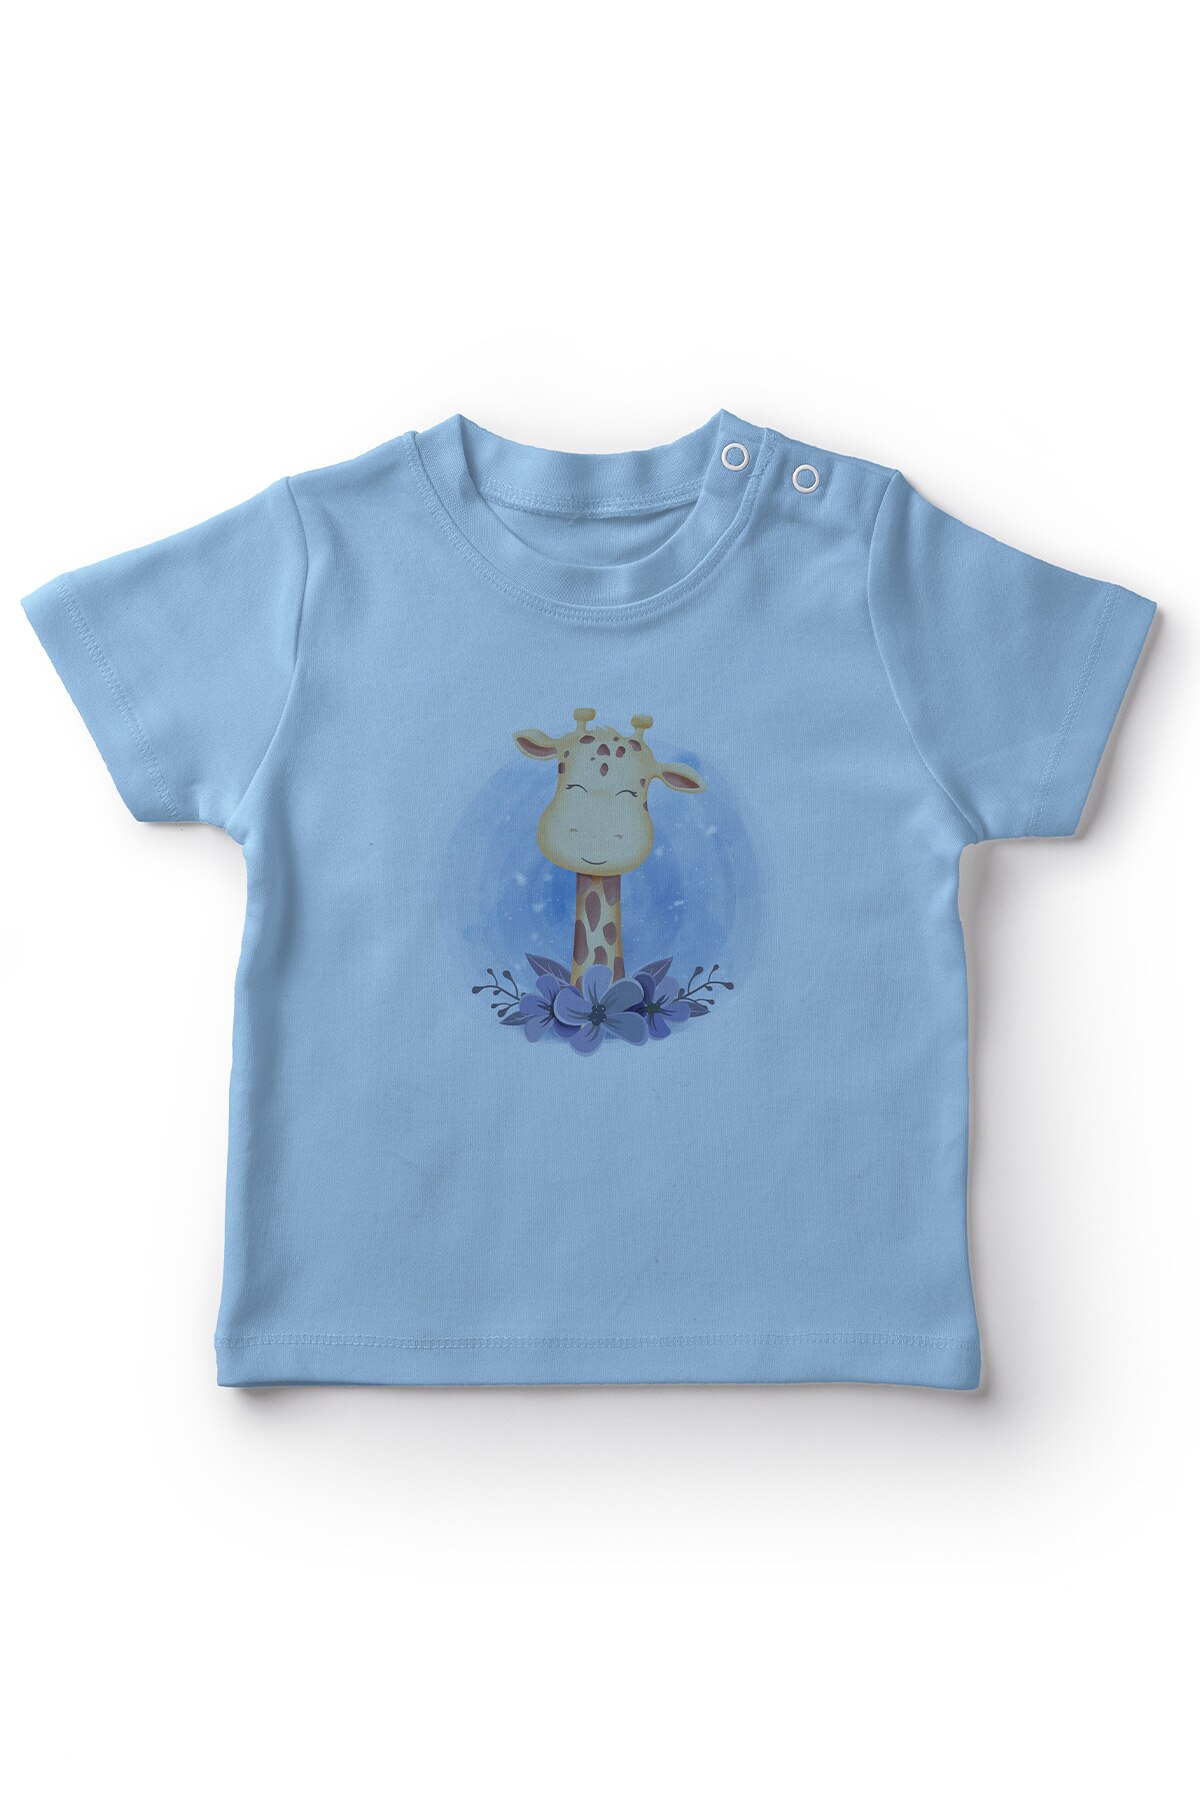 Angemiel baby søde blomster i̇çindeki giraf drenge baby t-shirt blå